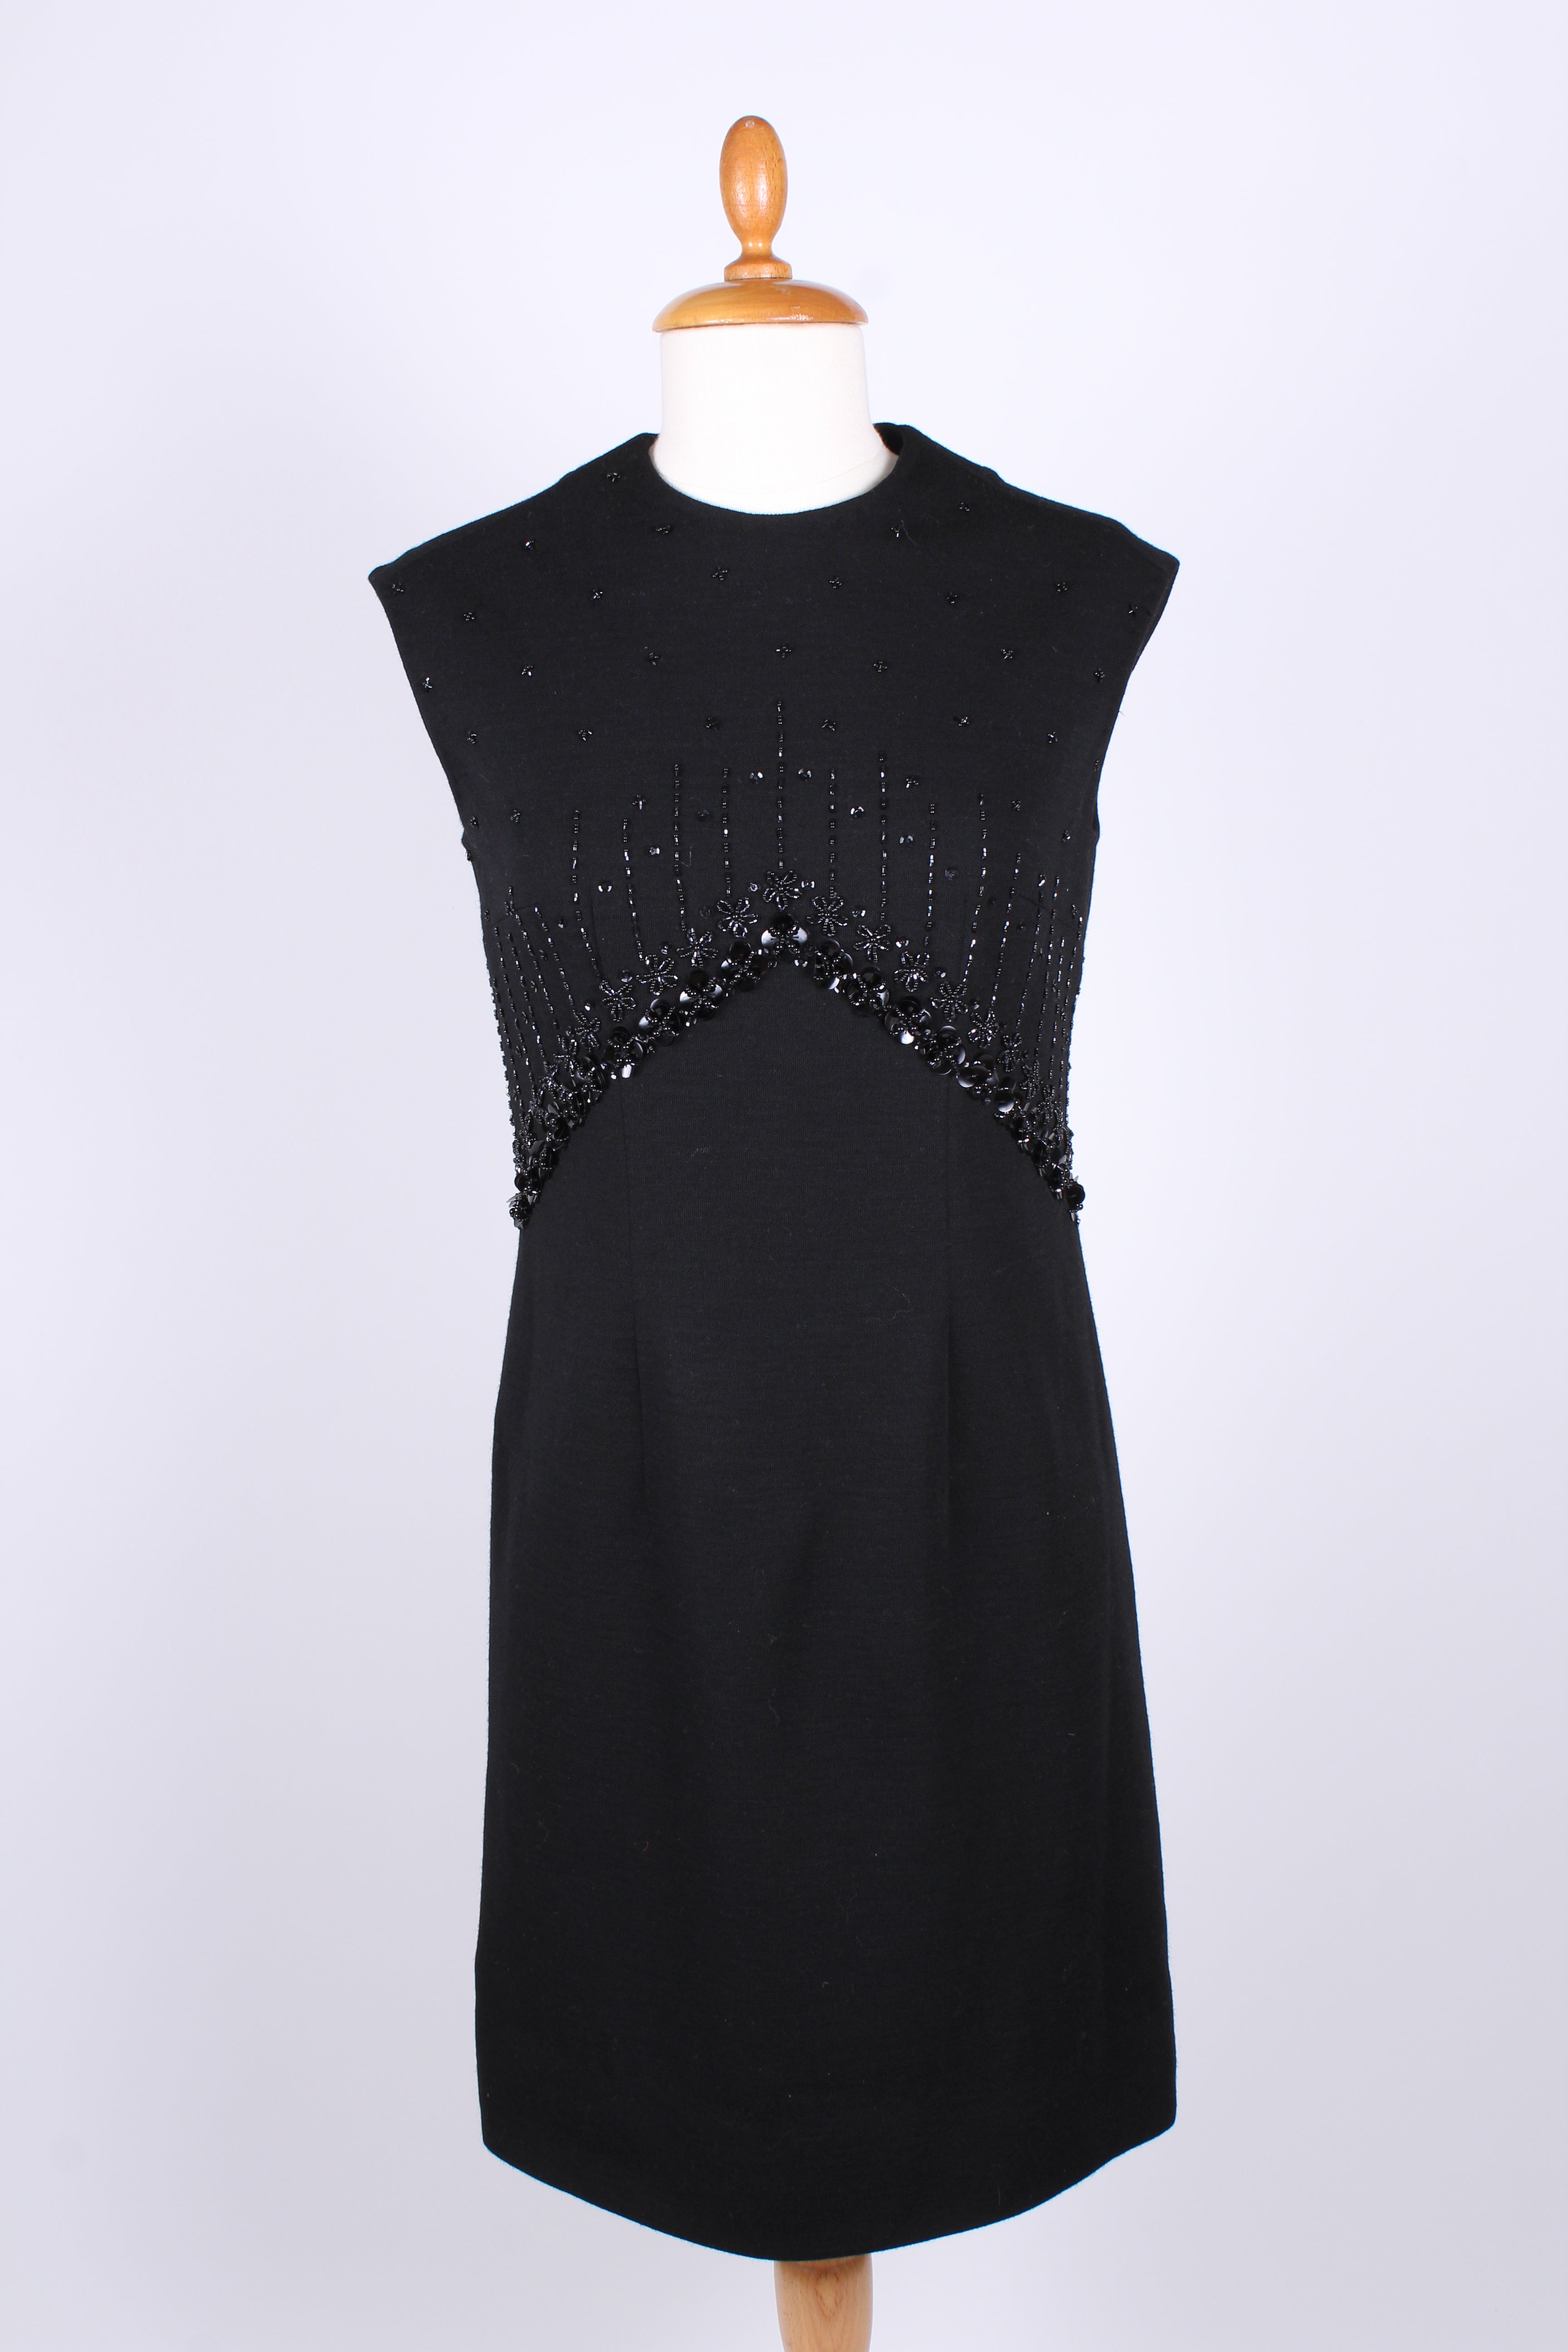 Sort uldjersey kjole med palietter. 1960. S